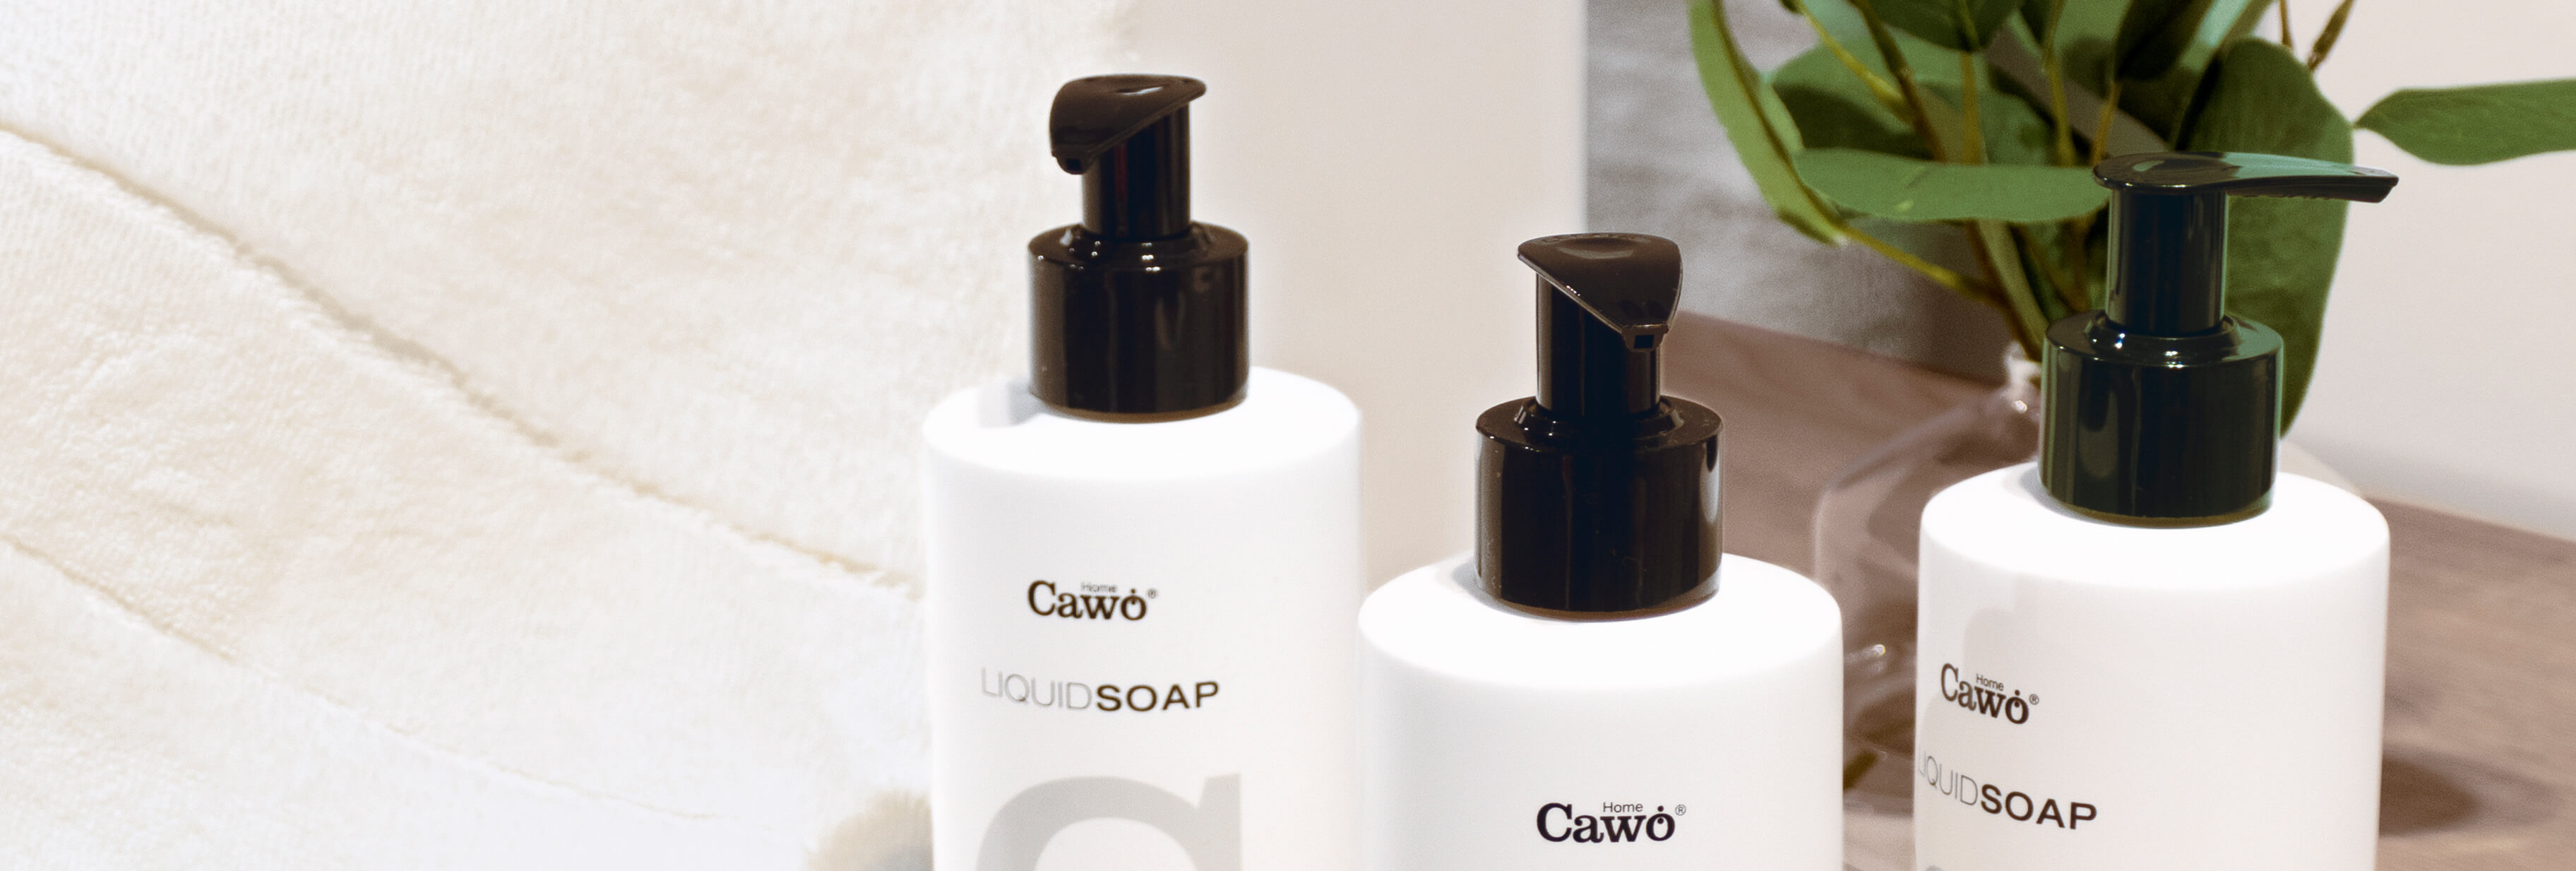 Cawö Home Accessoires - Liquid Soap 10006 - Duft: Pure - 10 Detailbild 2